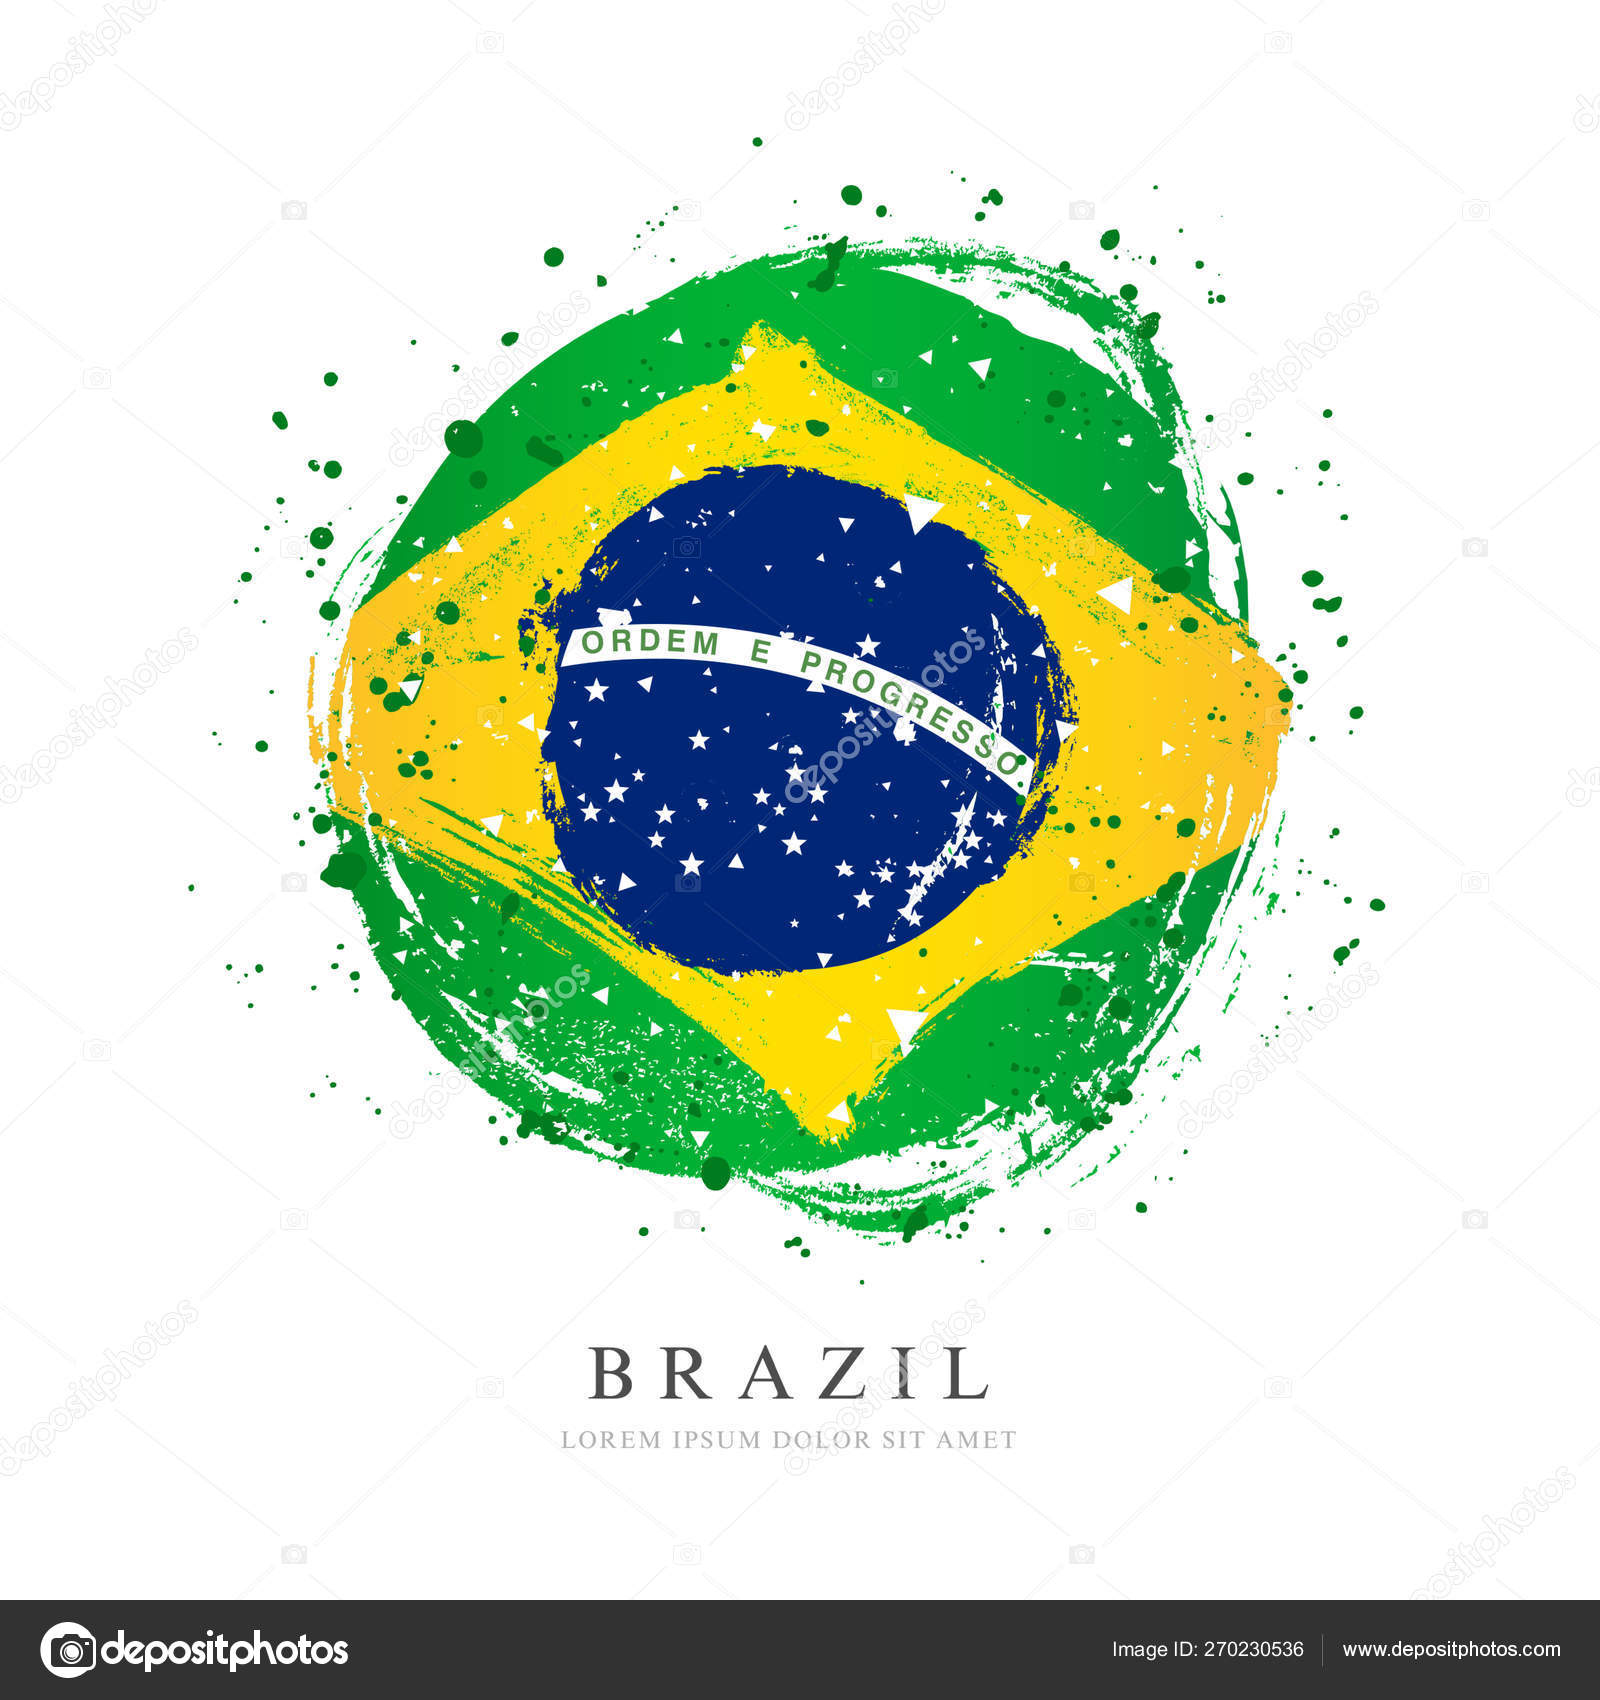 https://st4.depositphotos.com/3346395/27023/v/1600/depositphotos_270230536-stock-illustration-brazilian-flag-in-the-shape.jpg